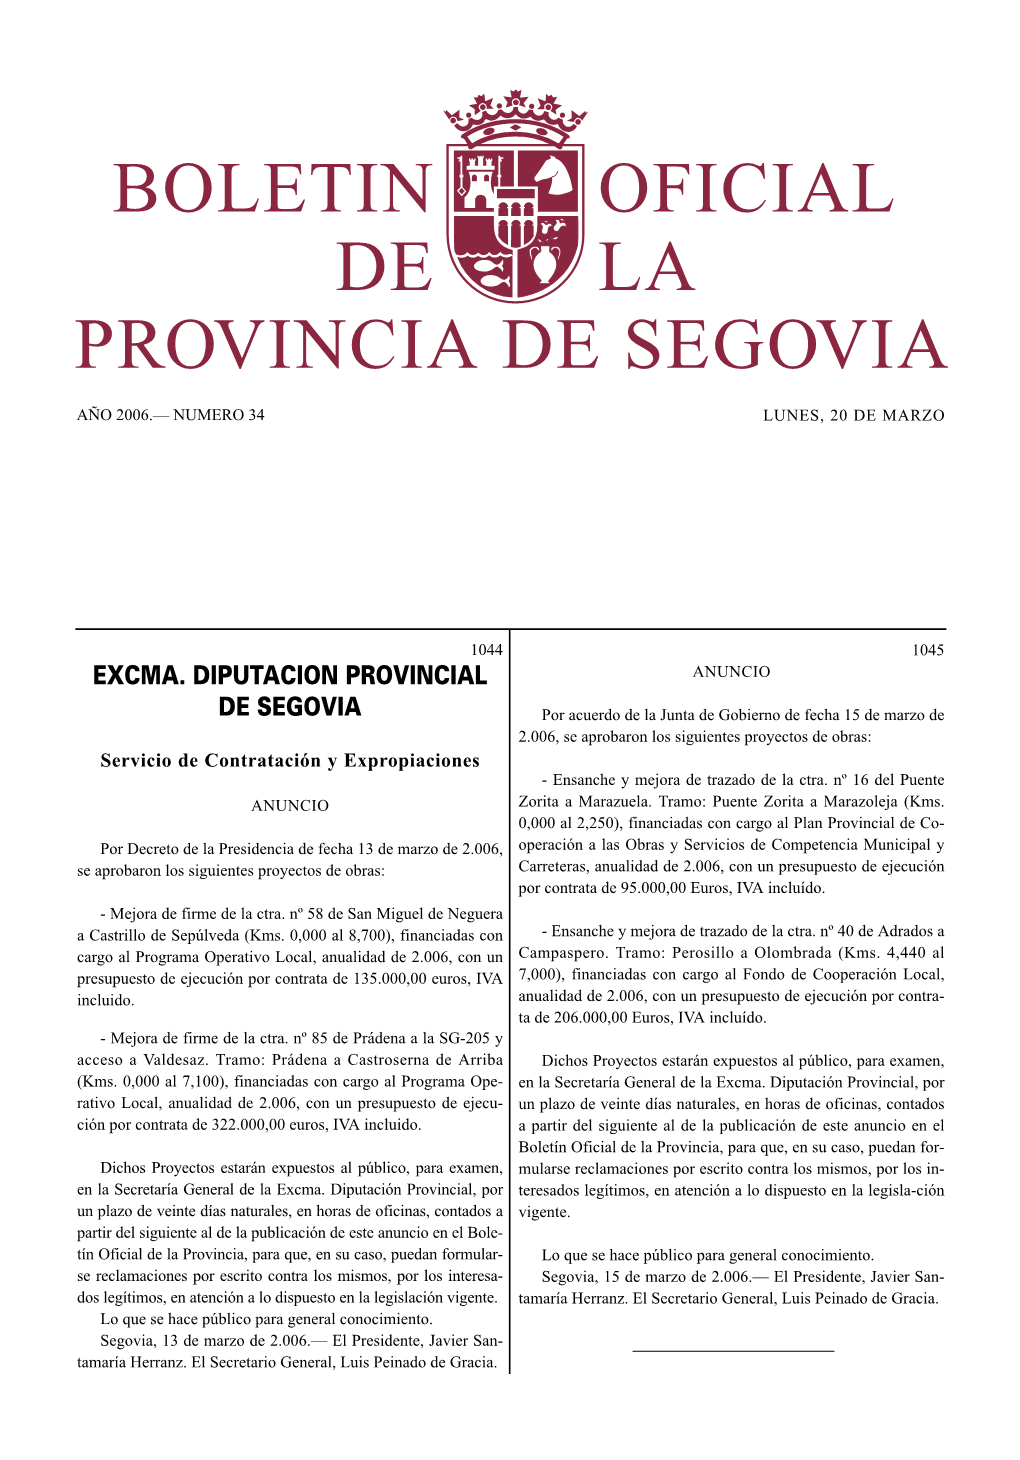 Excma. Diputacion Provincial De Segovia